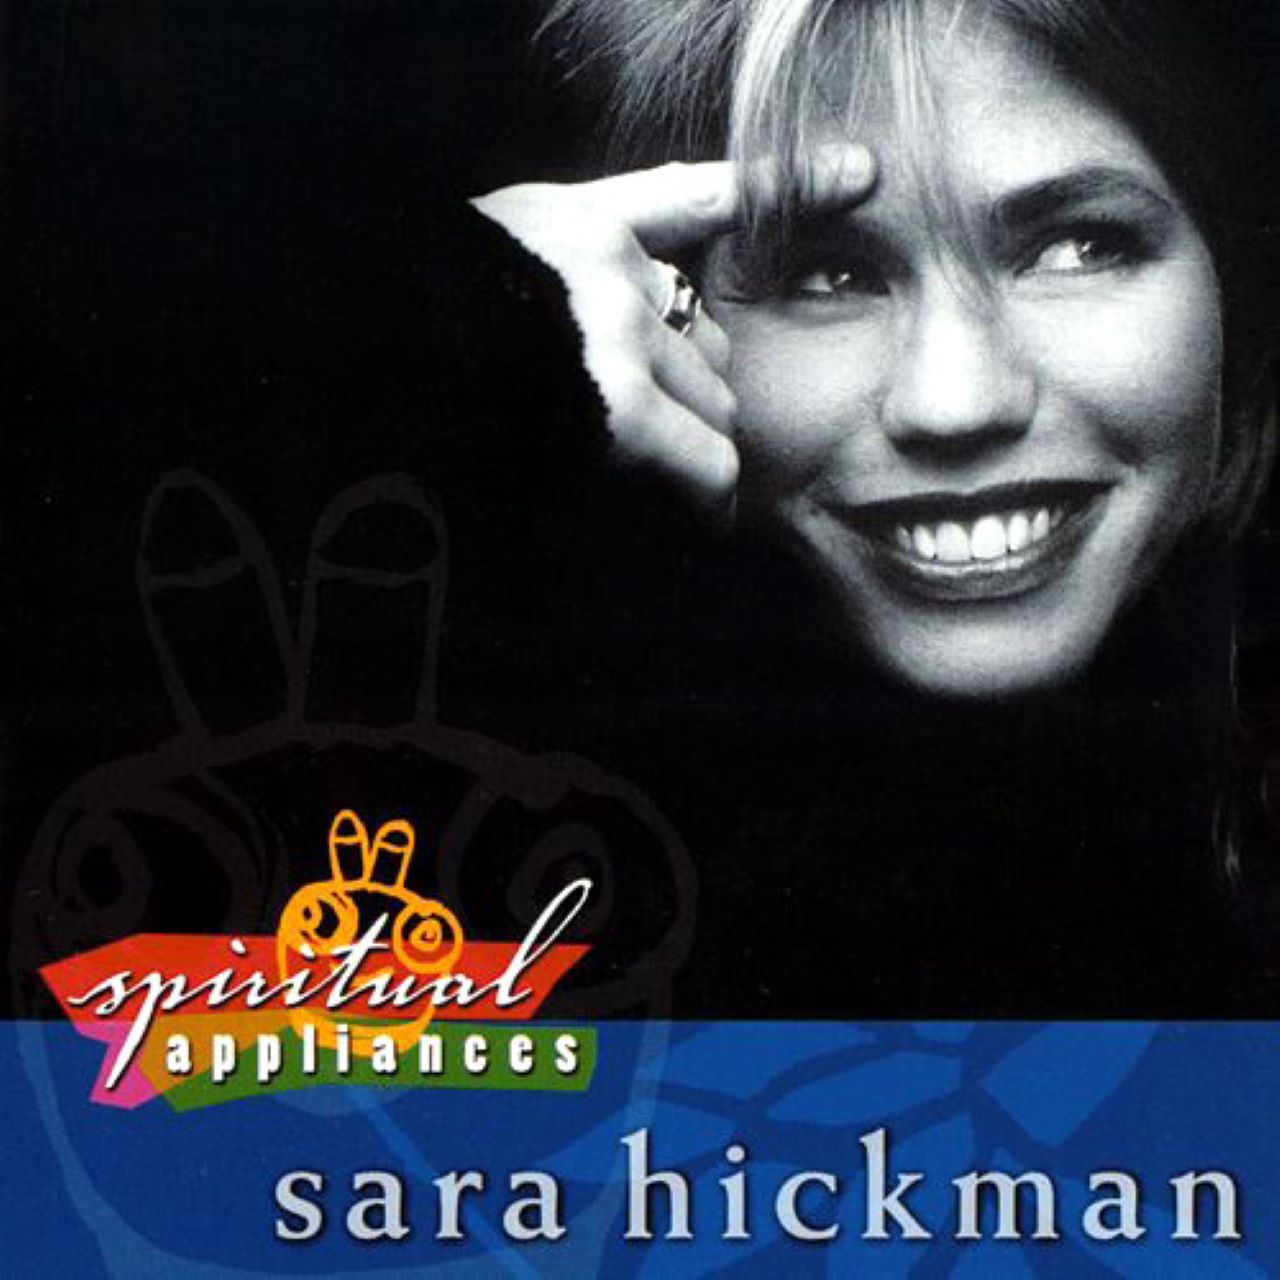 Sara Hickman - Spiritual Appliances cover album